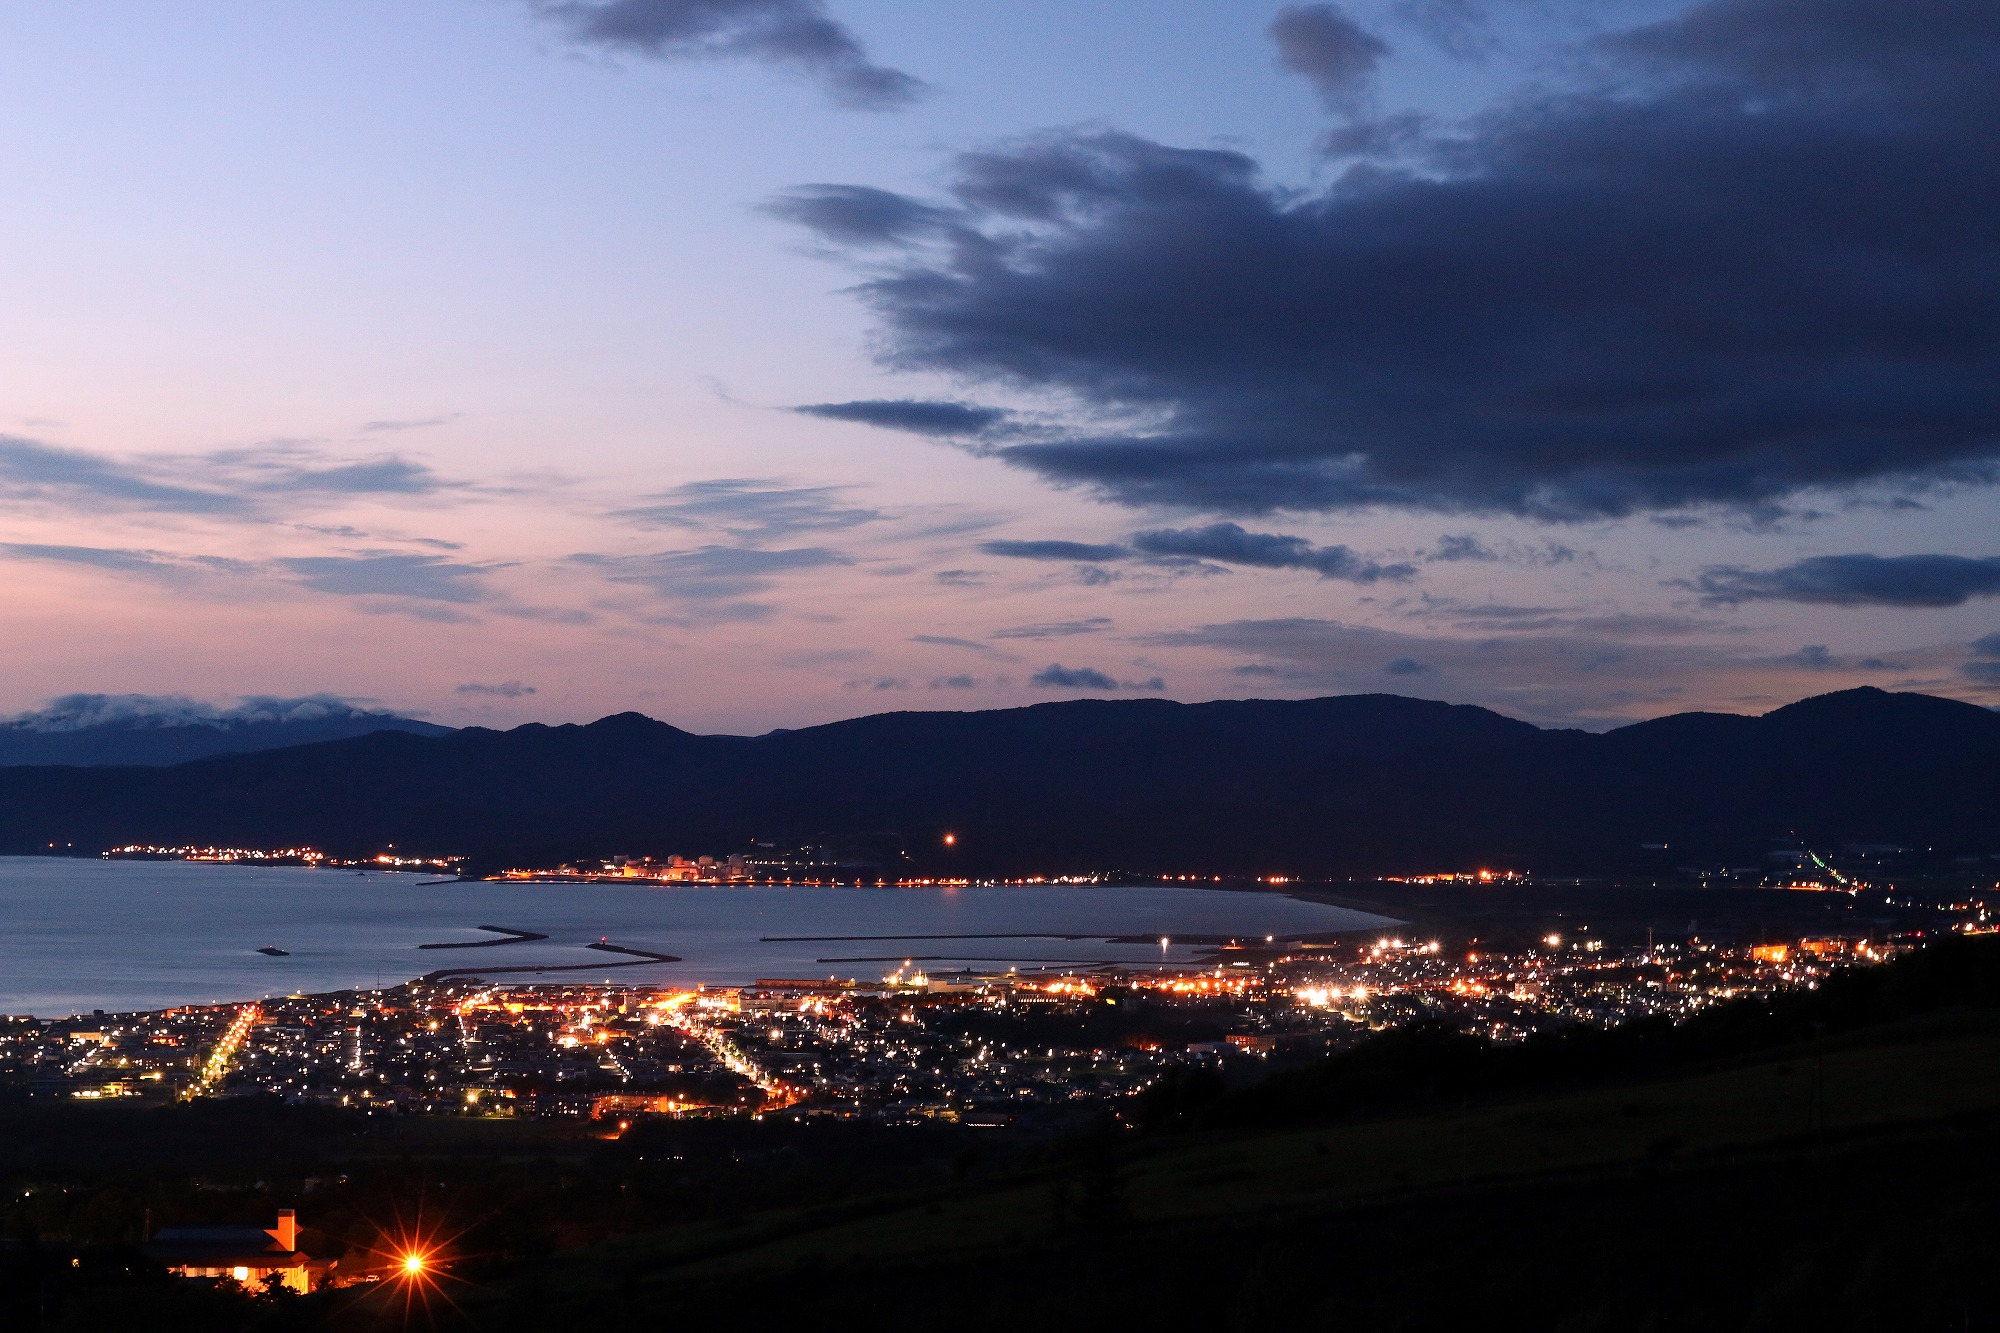 岩内町の円山地域から望む夜景です。
日本夜景遺産に認定されるほどの絶景ですので、ぜひご覧ください♪